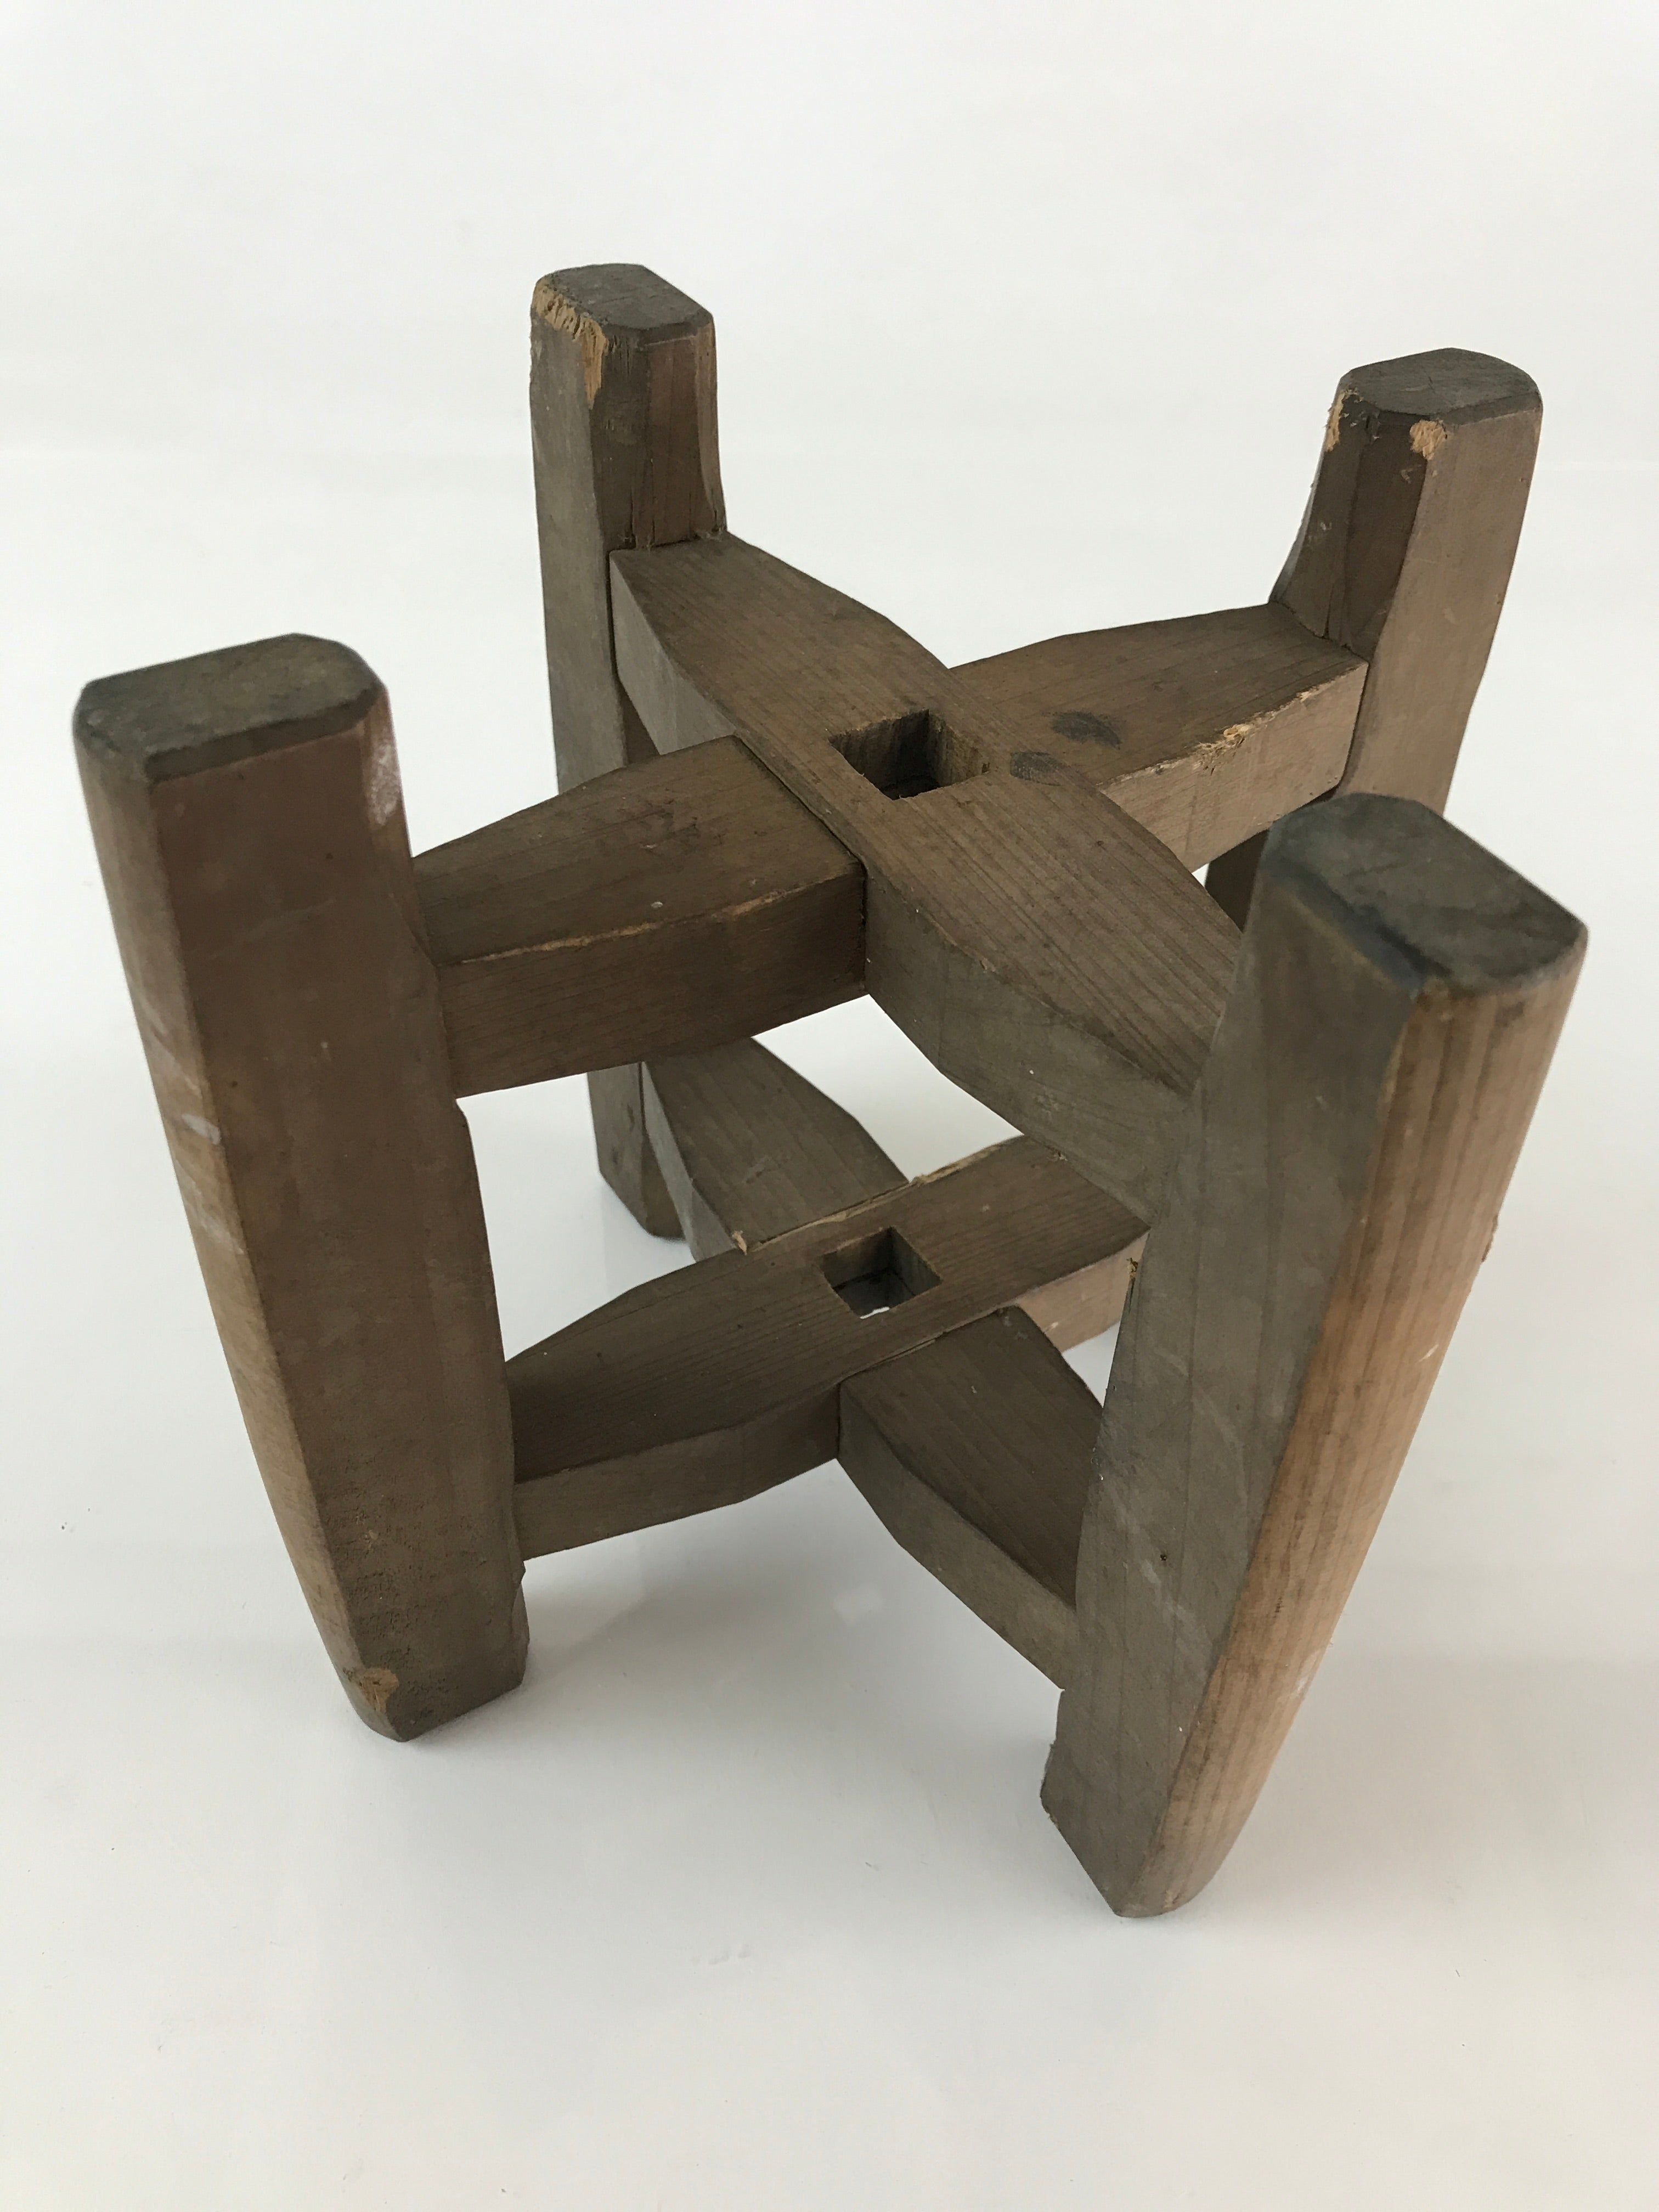 Japanese Wooden Spool Itomaki Vtg Thread Winding Frame Spinning Wheel JK413